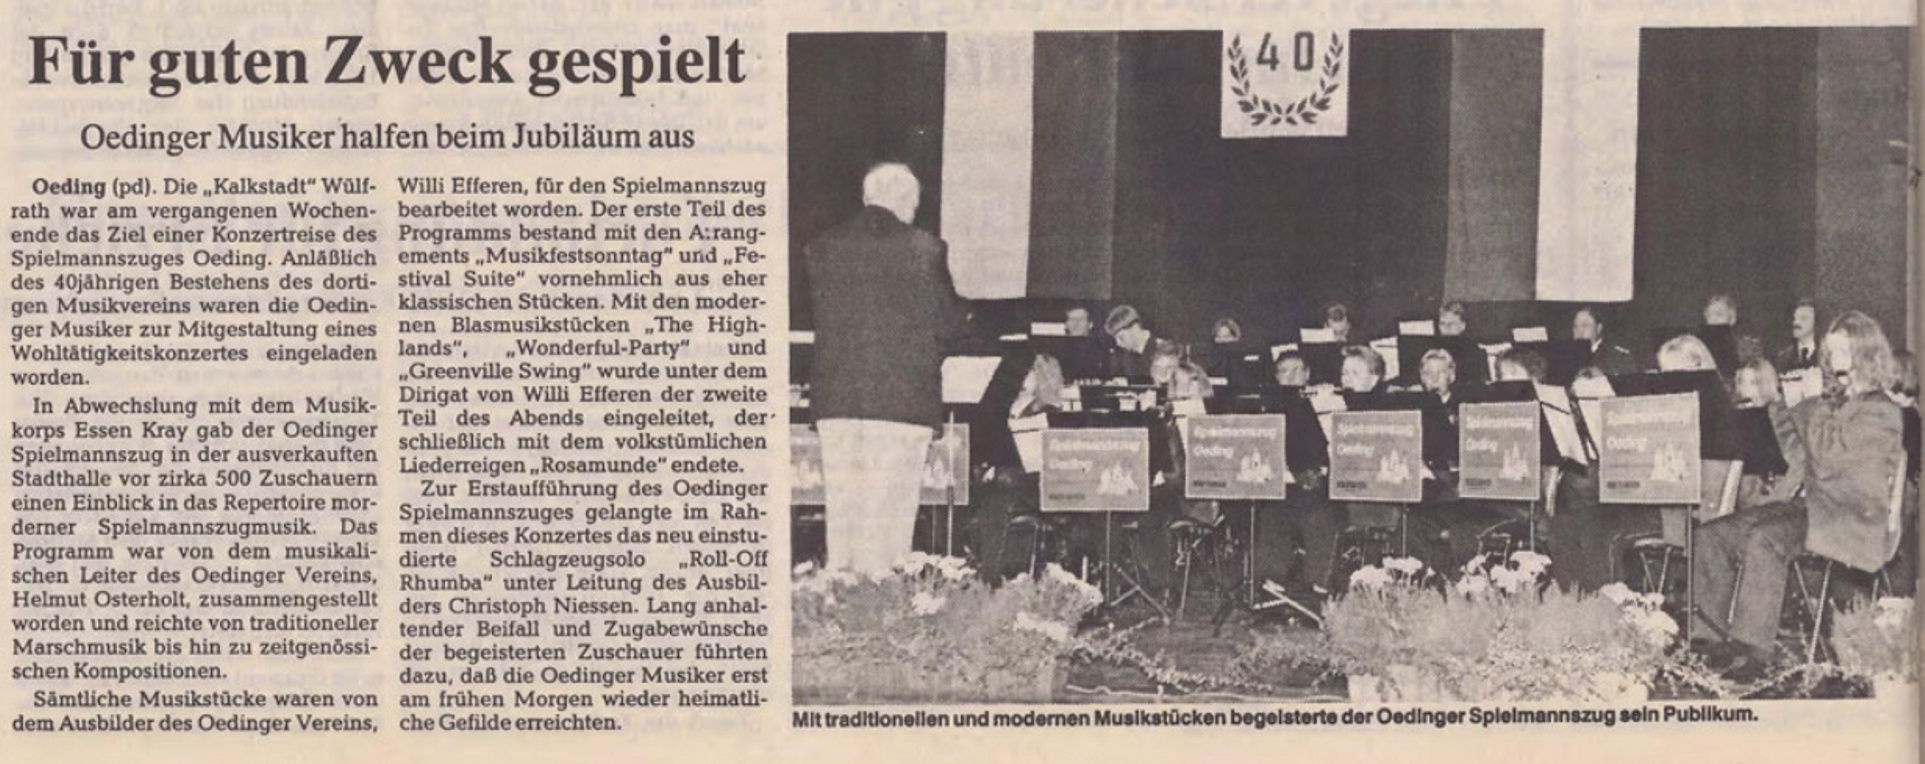 Oedinger Musiker halfen beim Jubiläum aus | BZ 05 10 1994